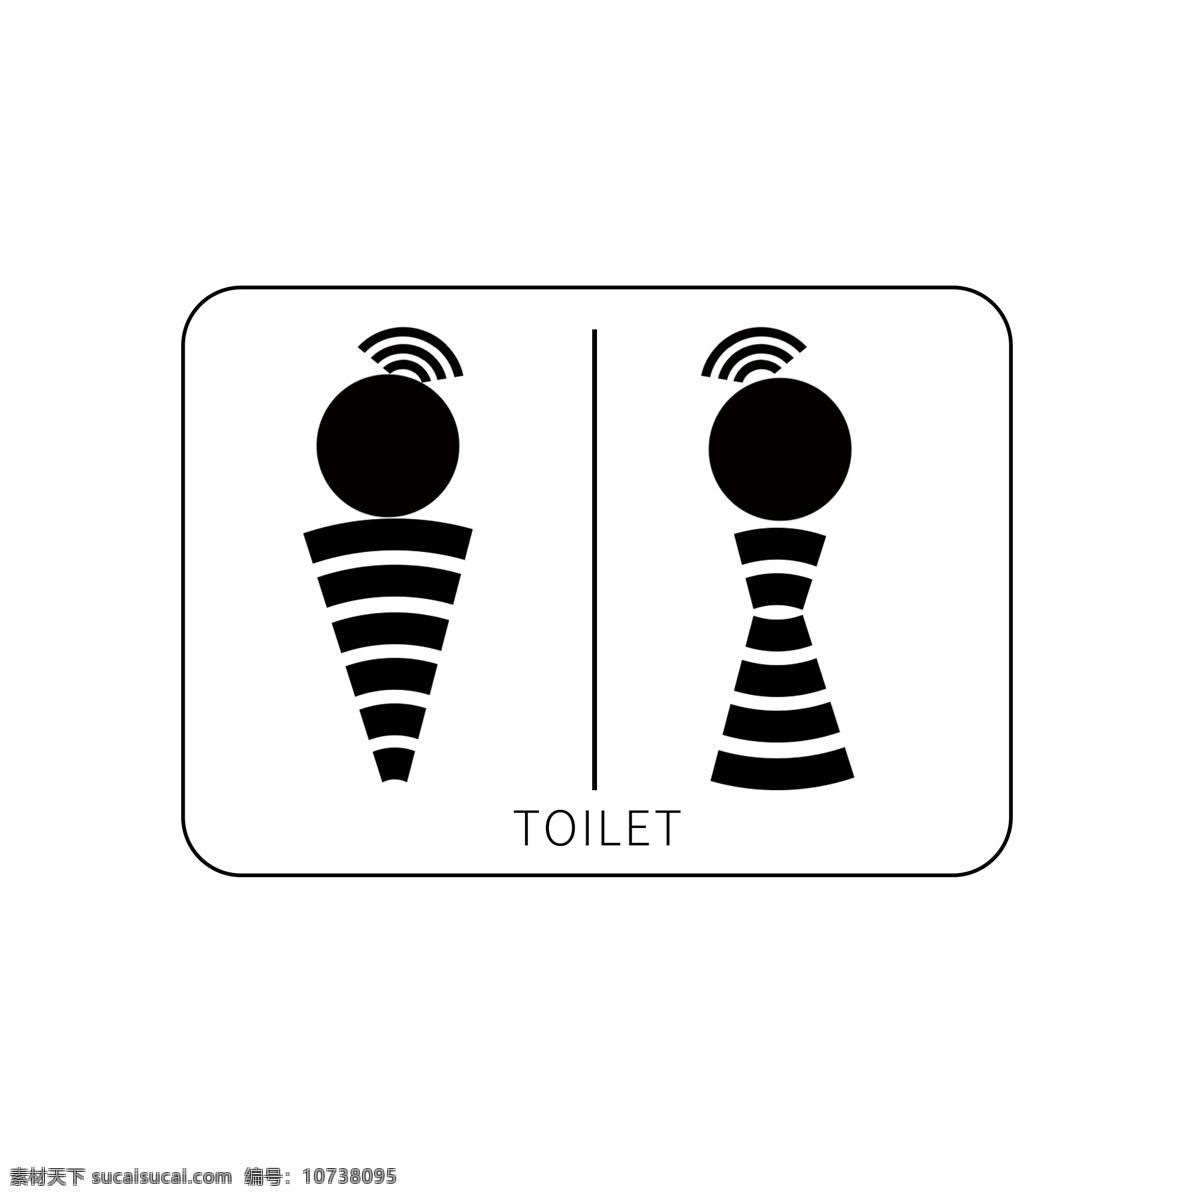 wc 厕所 标志 卫生间 洗手间 男女 创意 简约 卡通 toilet 导视牌 牌子 小朋友 游乐园 幼儿园 指引牌